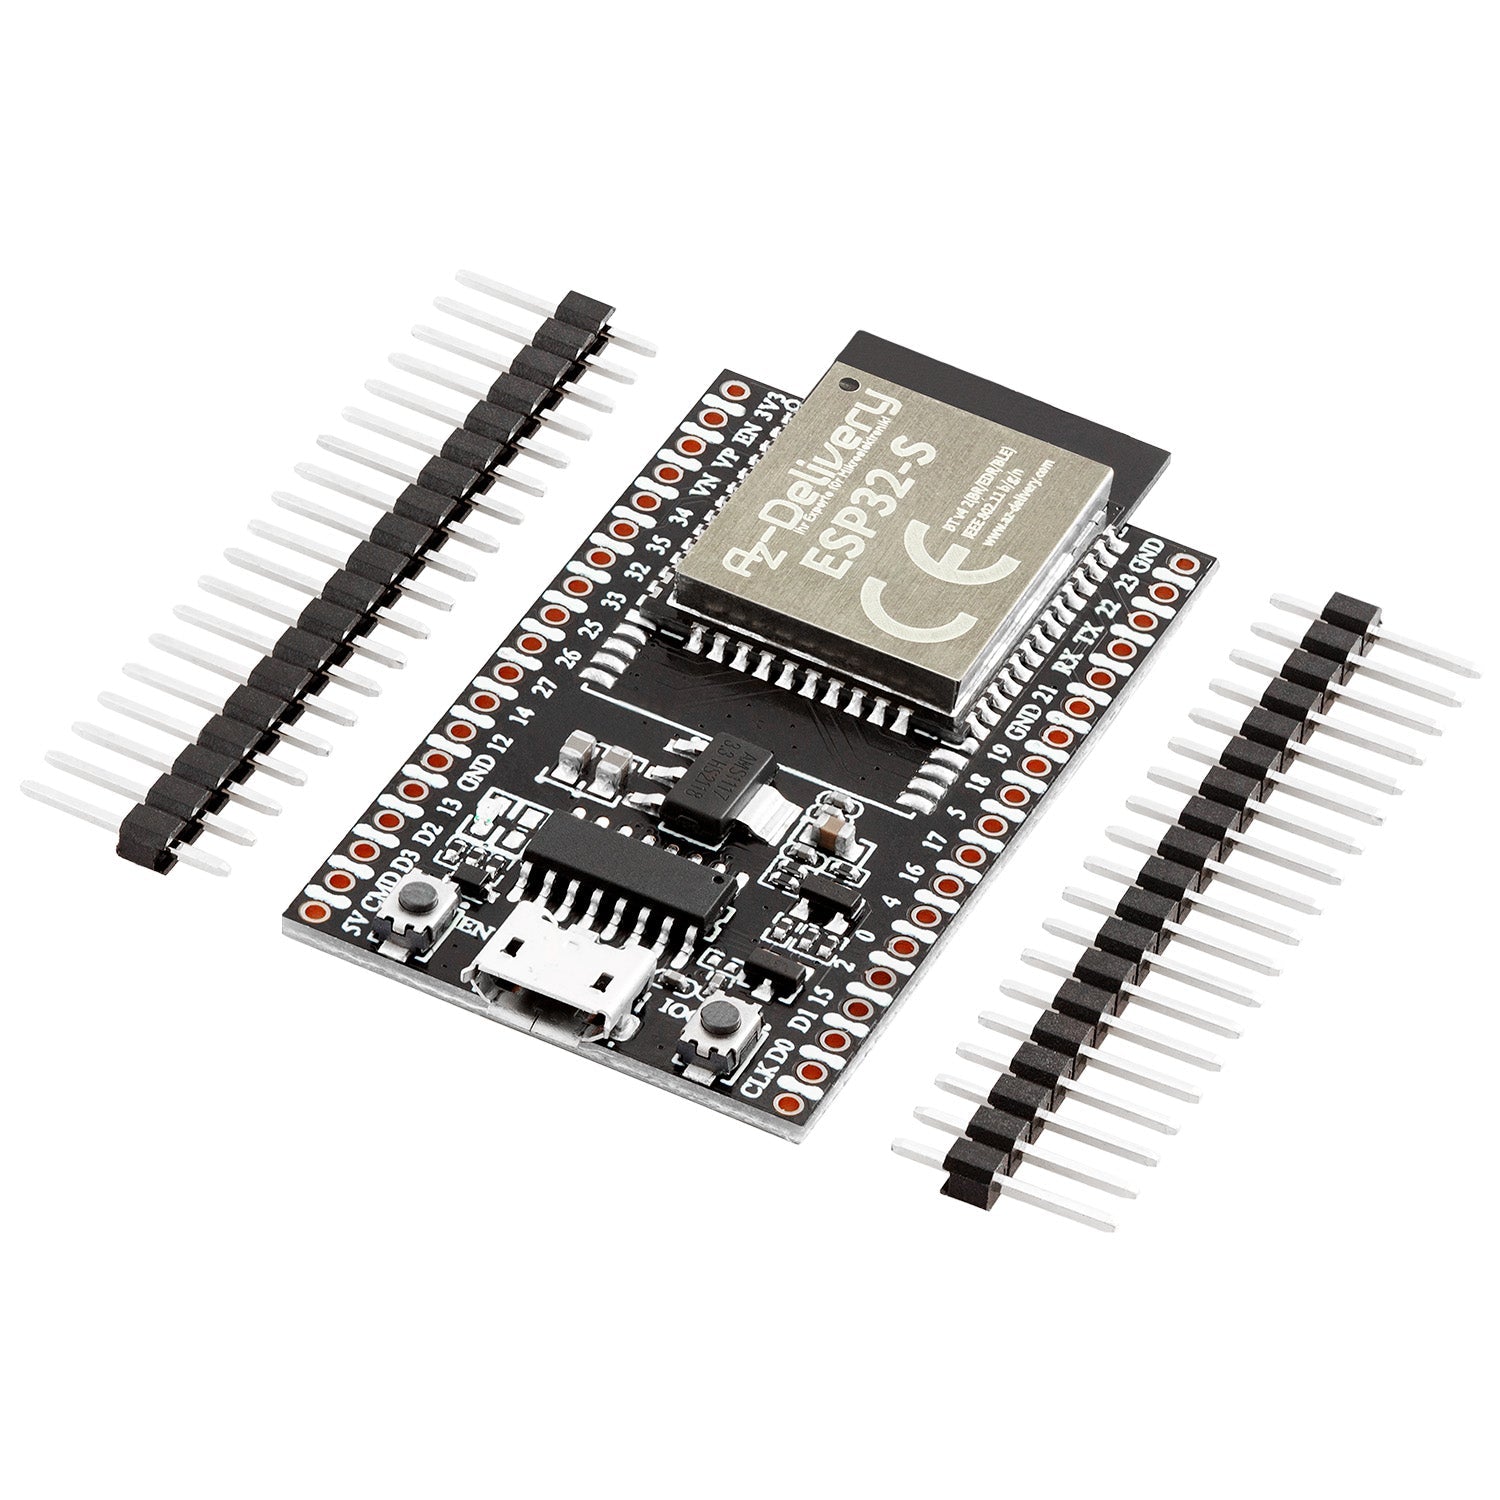 ESP32S Dev Kit C V4 NodeMCU WLAN Development Board unverlötet kompatibel mit Arduino (Nachfolger Modul von ESP32S Dev Kit C) - AZ-Delivery